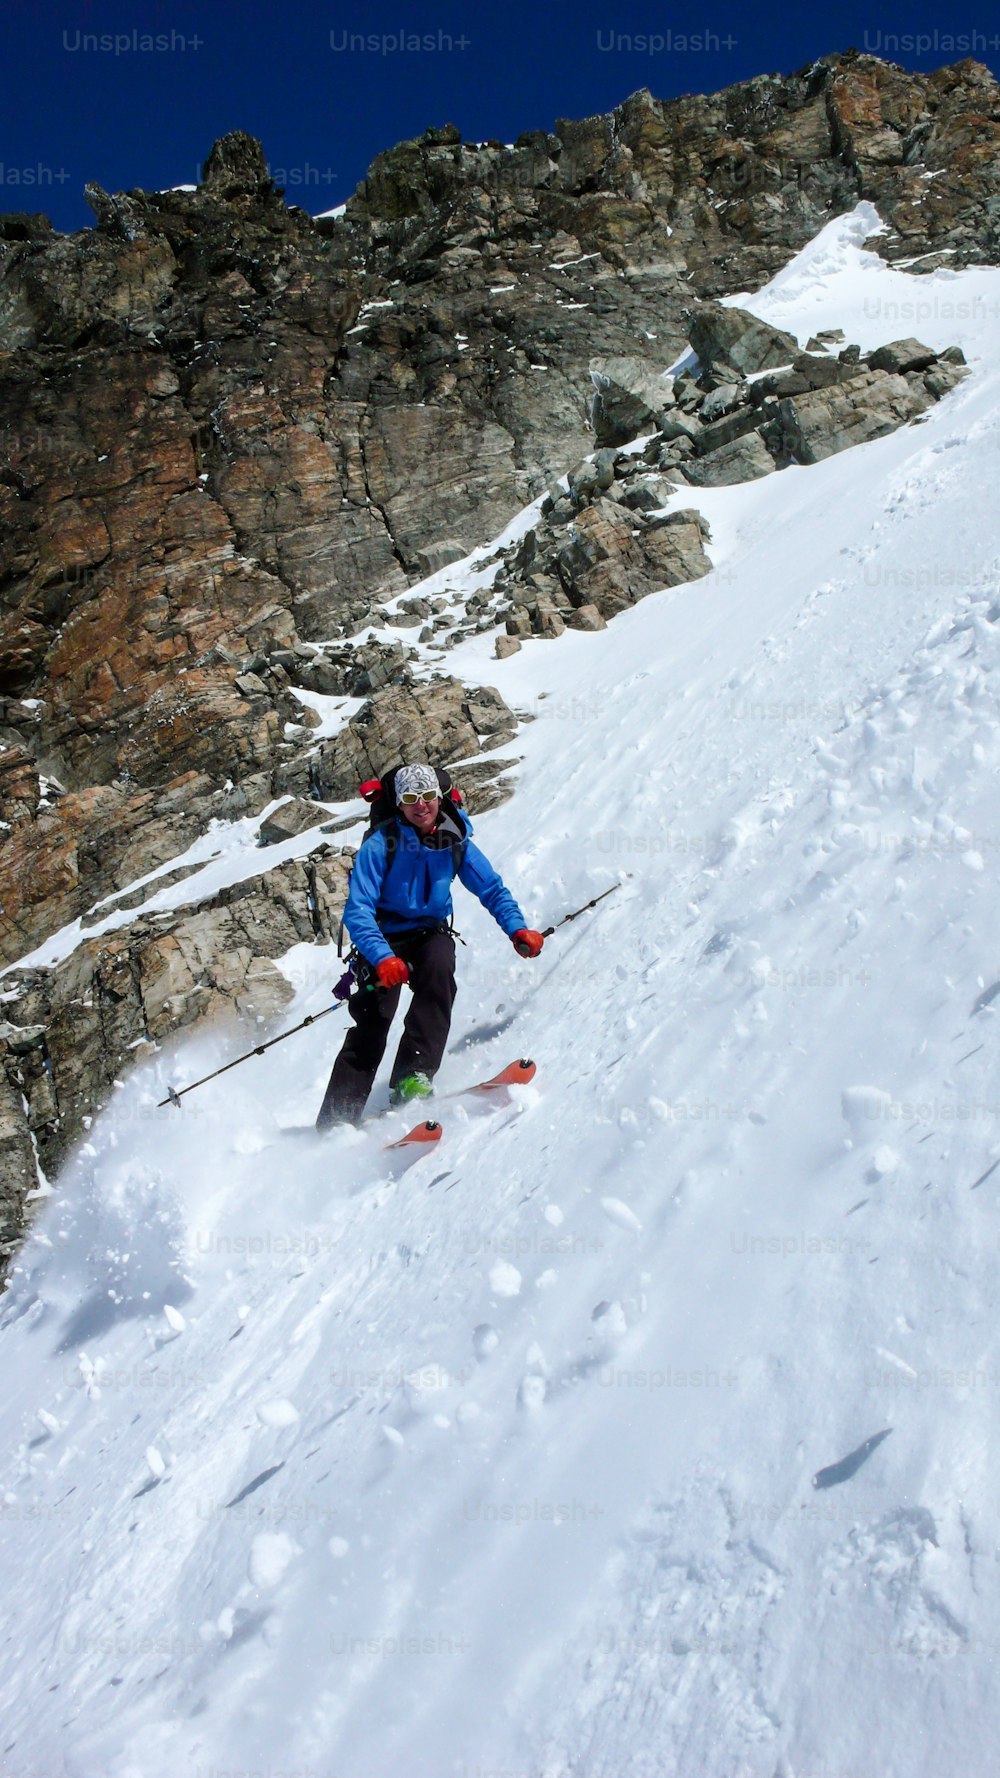 skieur extrême masculin descendant un couloir très raide en plein hiver dans les Alpes suisses près de Klosters par une belle journée d’hiver